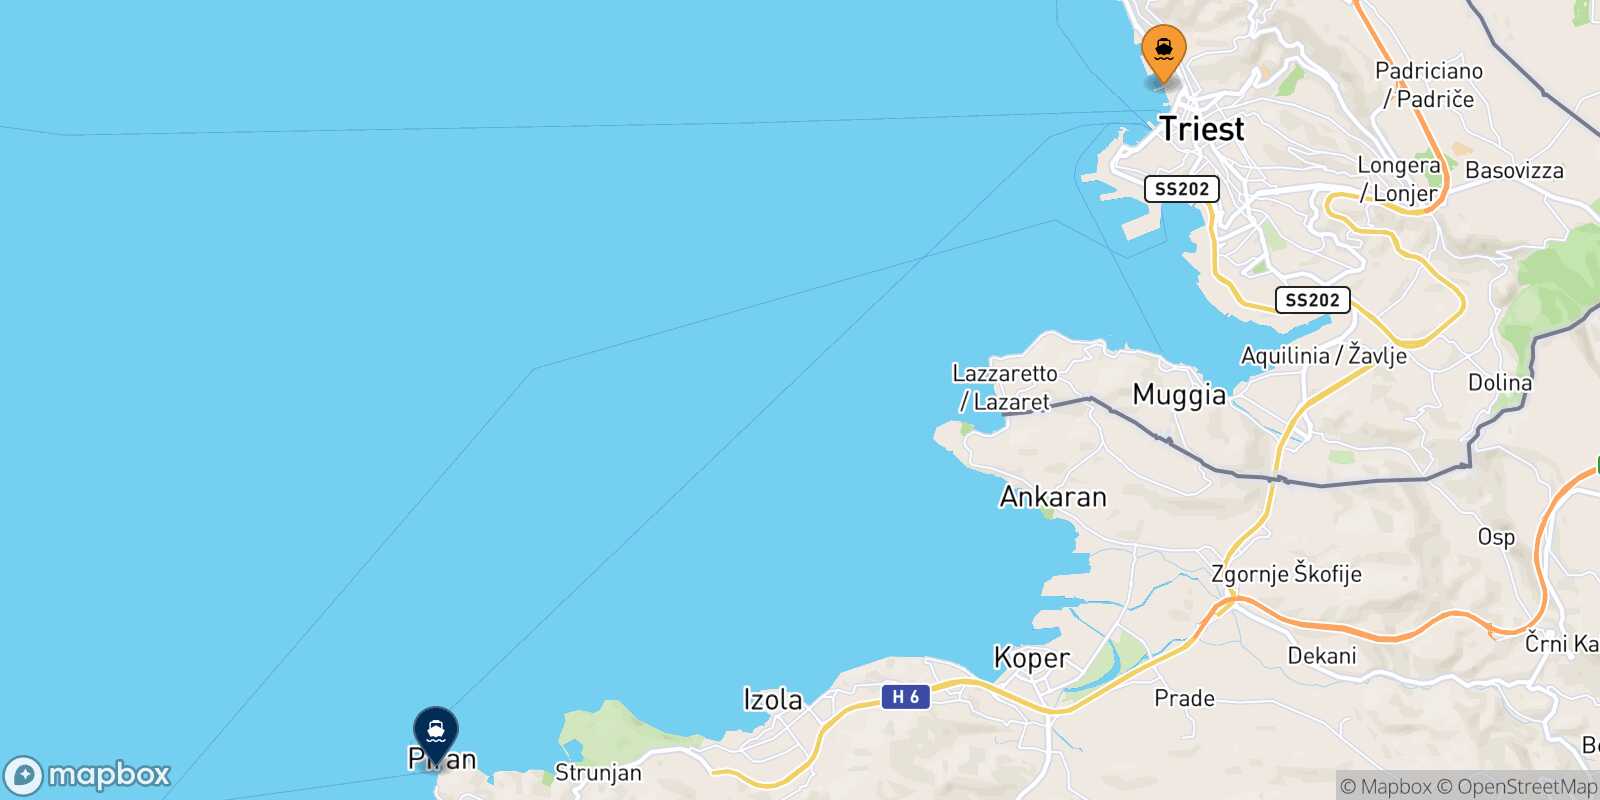 Mappa delle destinazioni raggiungibili da Trieste